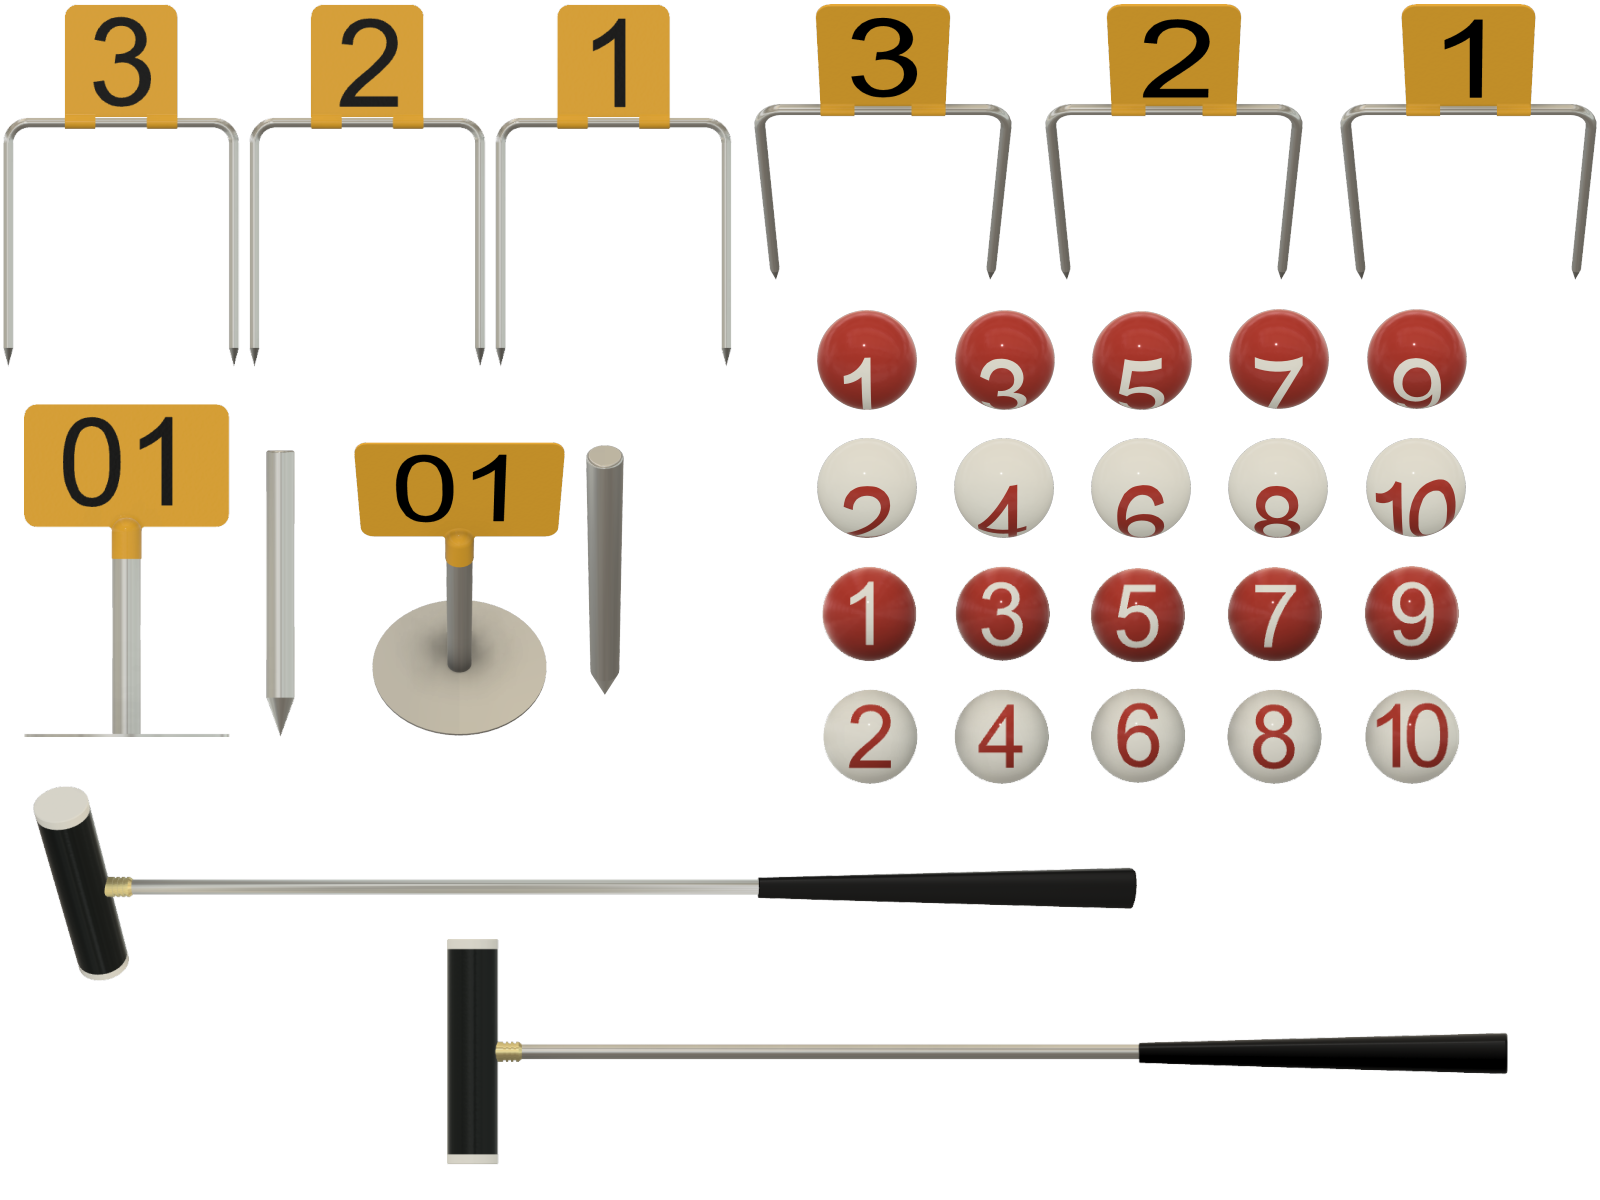 ゲートボールで使用する1〜3ゲート、ゴールポール、1〜10までの番号がふられた紅白のボール、スティックなどの道具